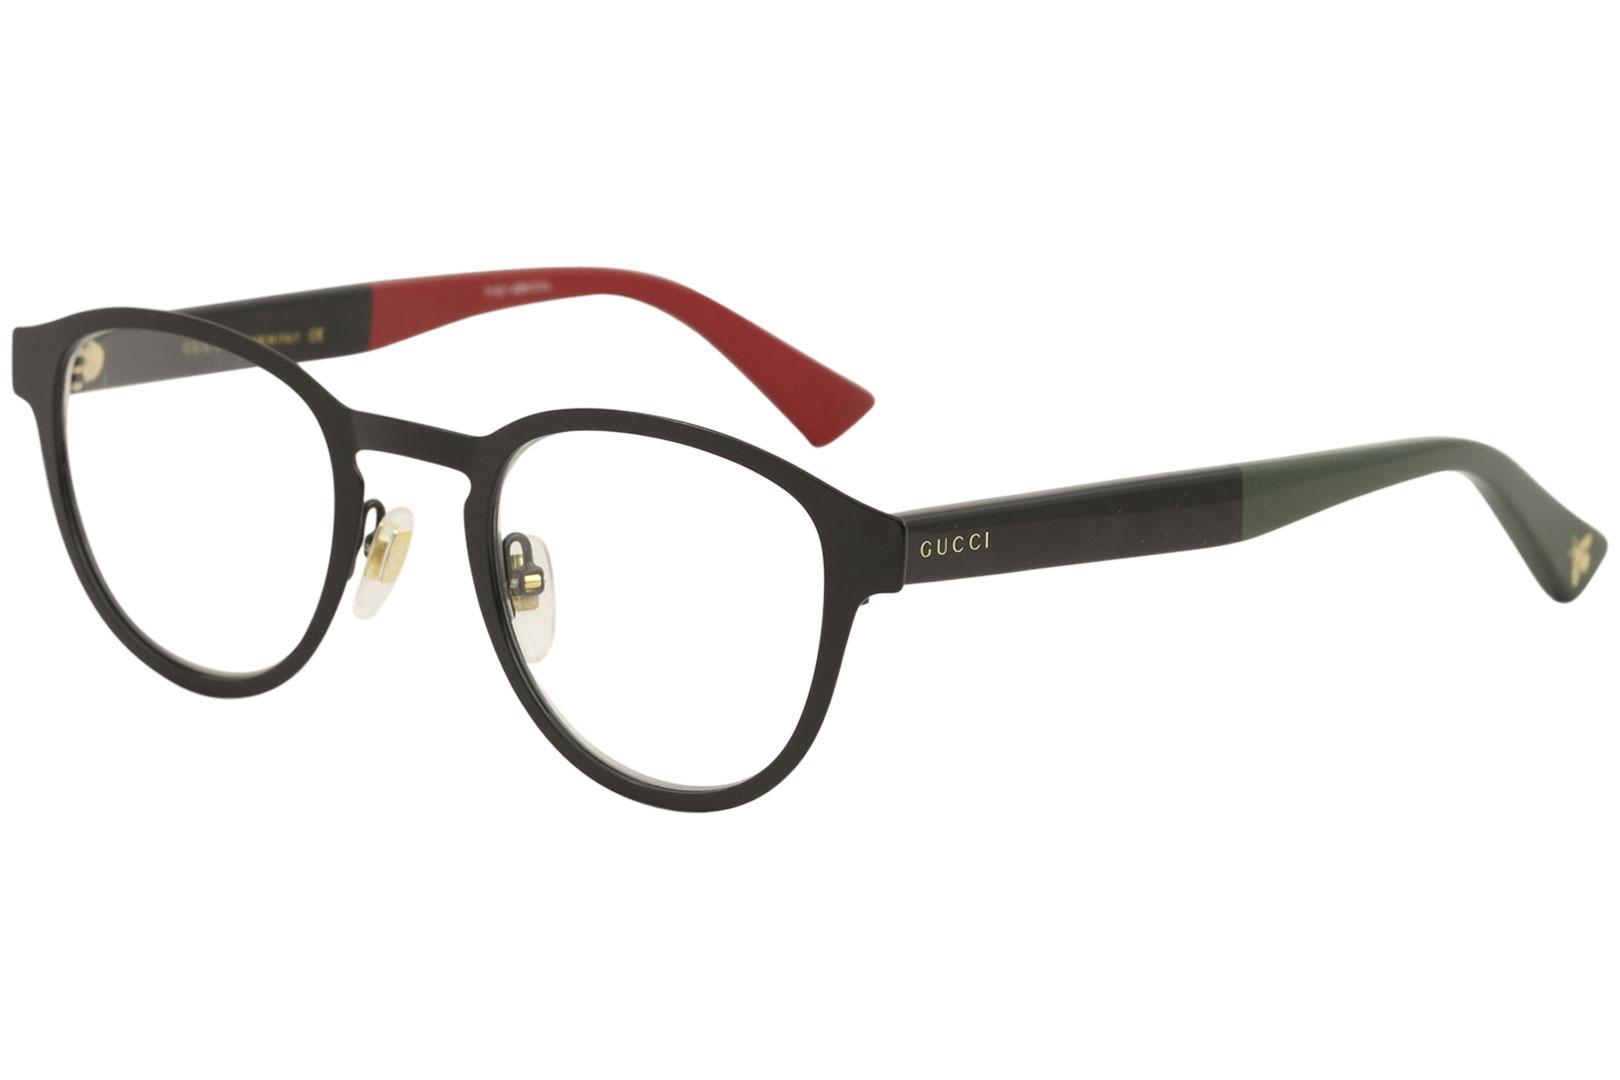 Gucci Men's Eyeglasses GG0161O 002 Full Rim Optical Frame 